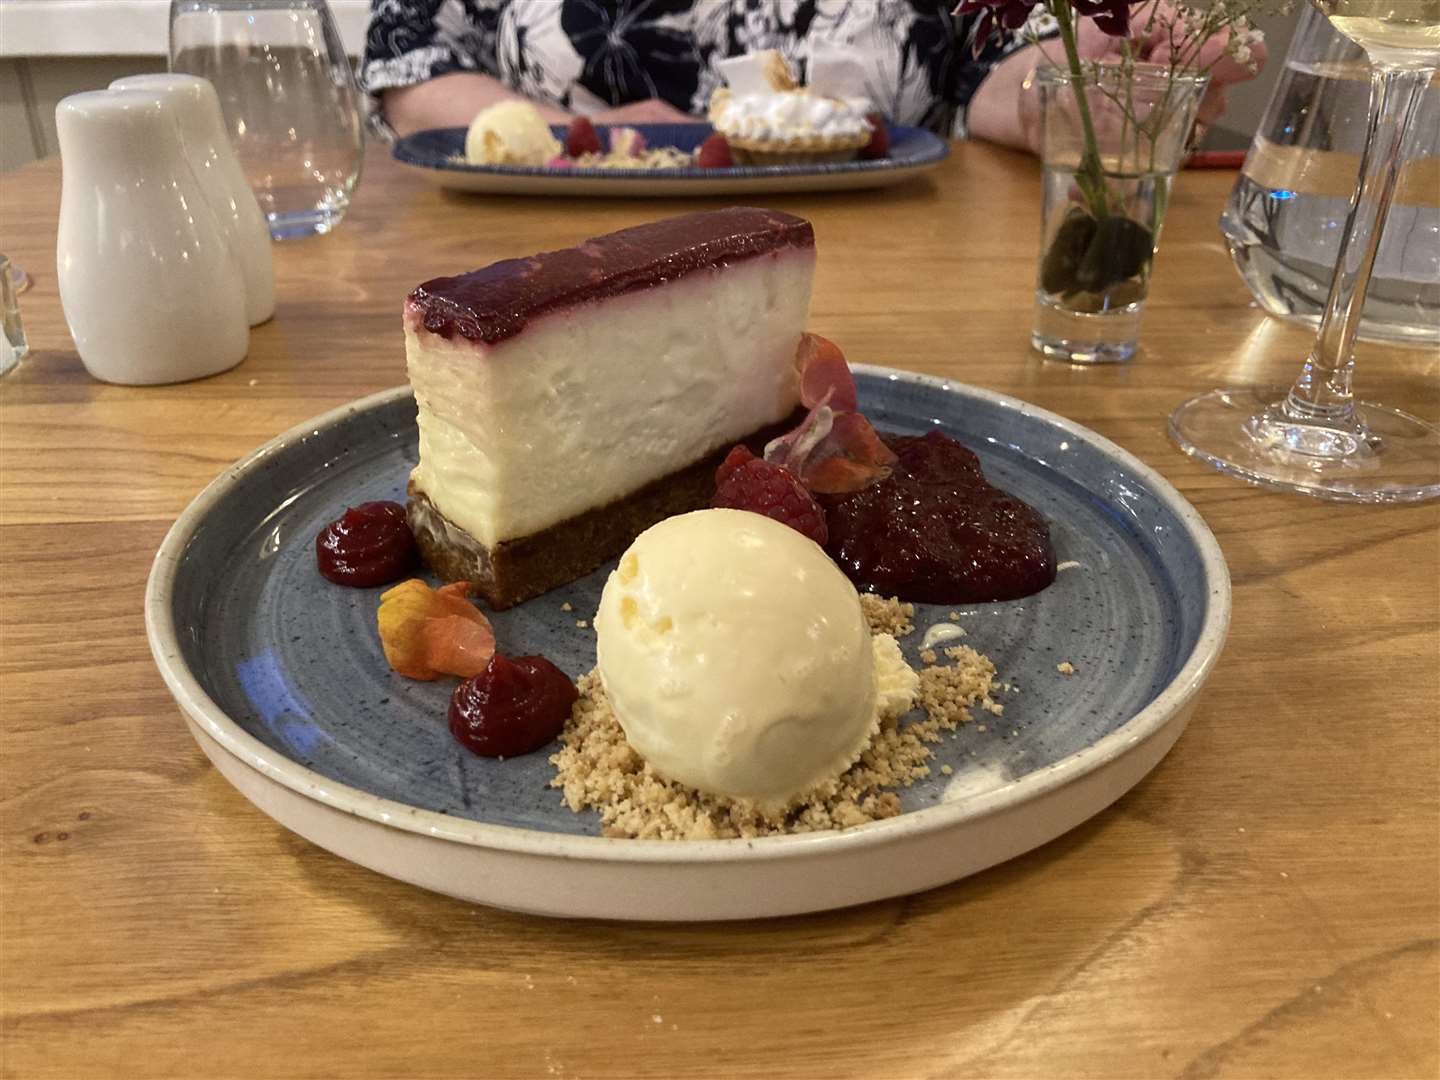 Pudding! White chocolate cheesecake with cherry jelly and vanilla bean ice cream